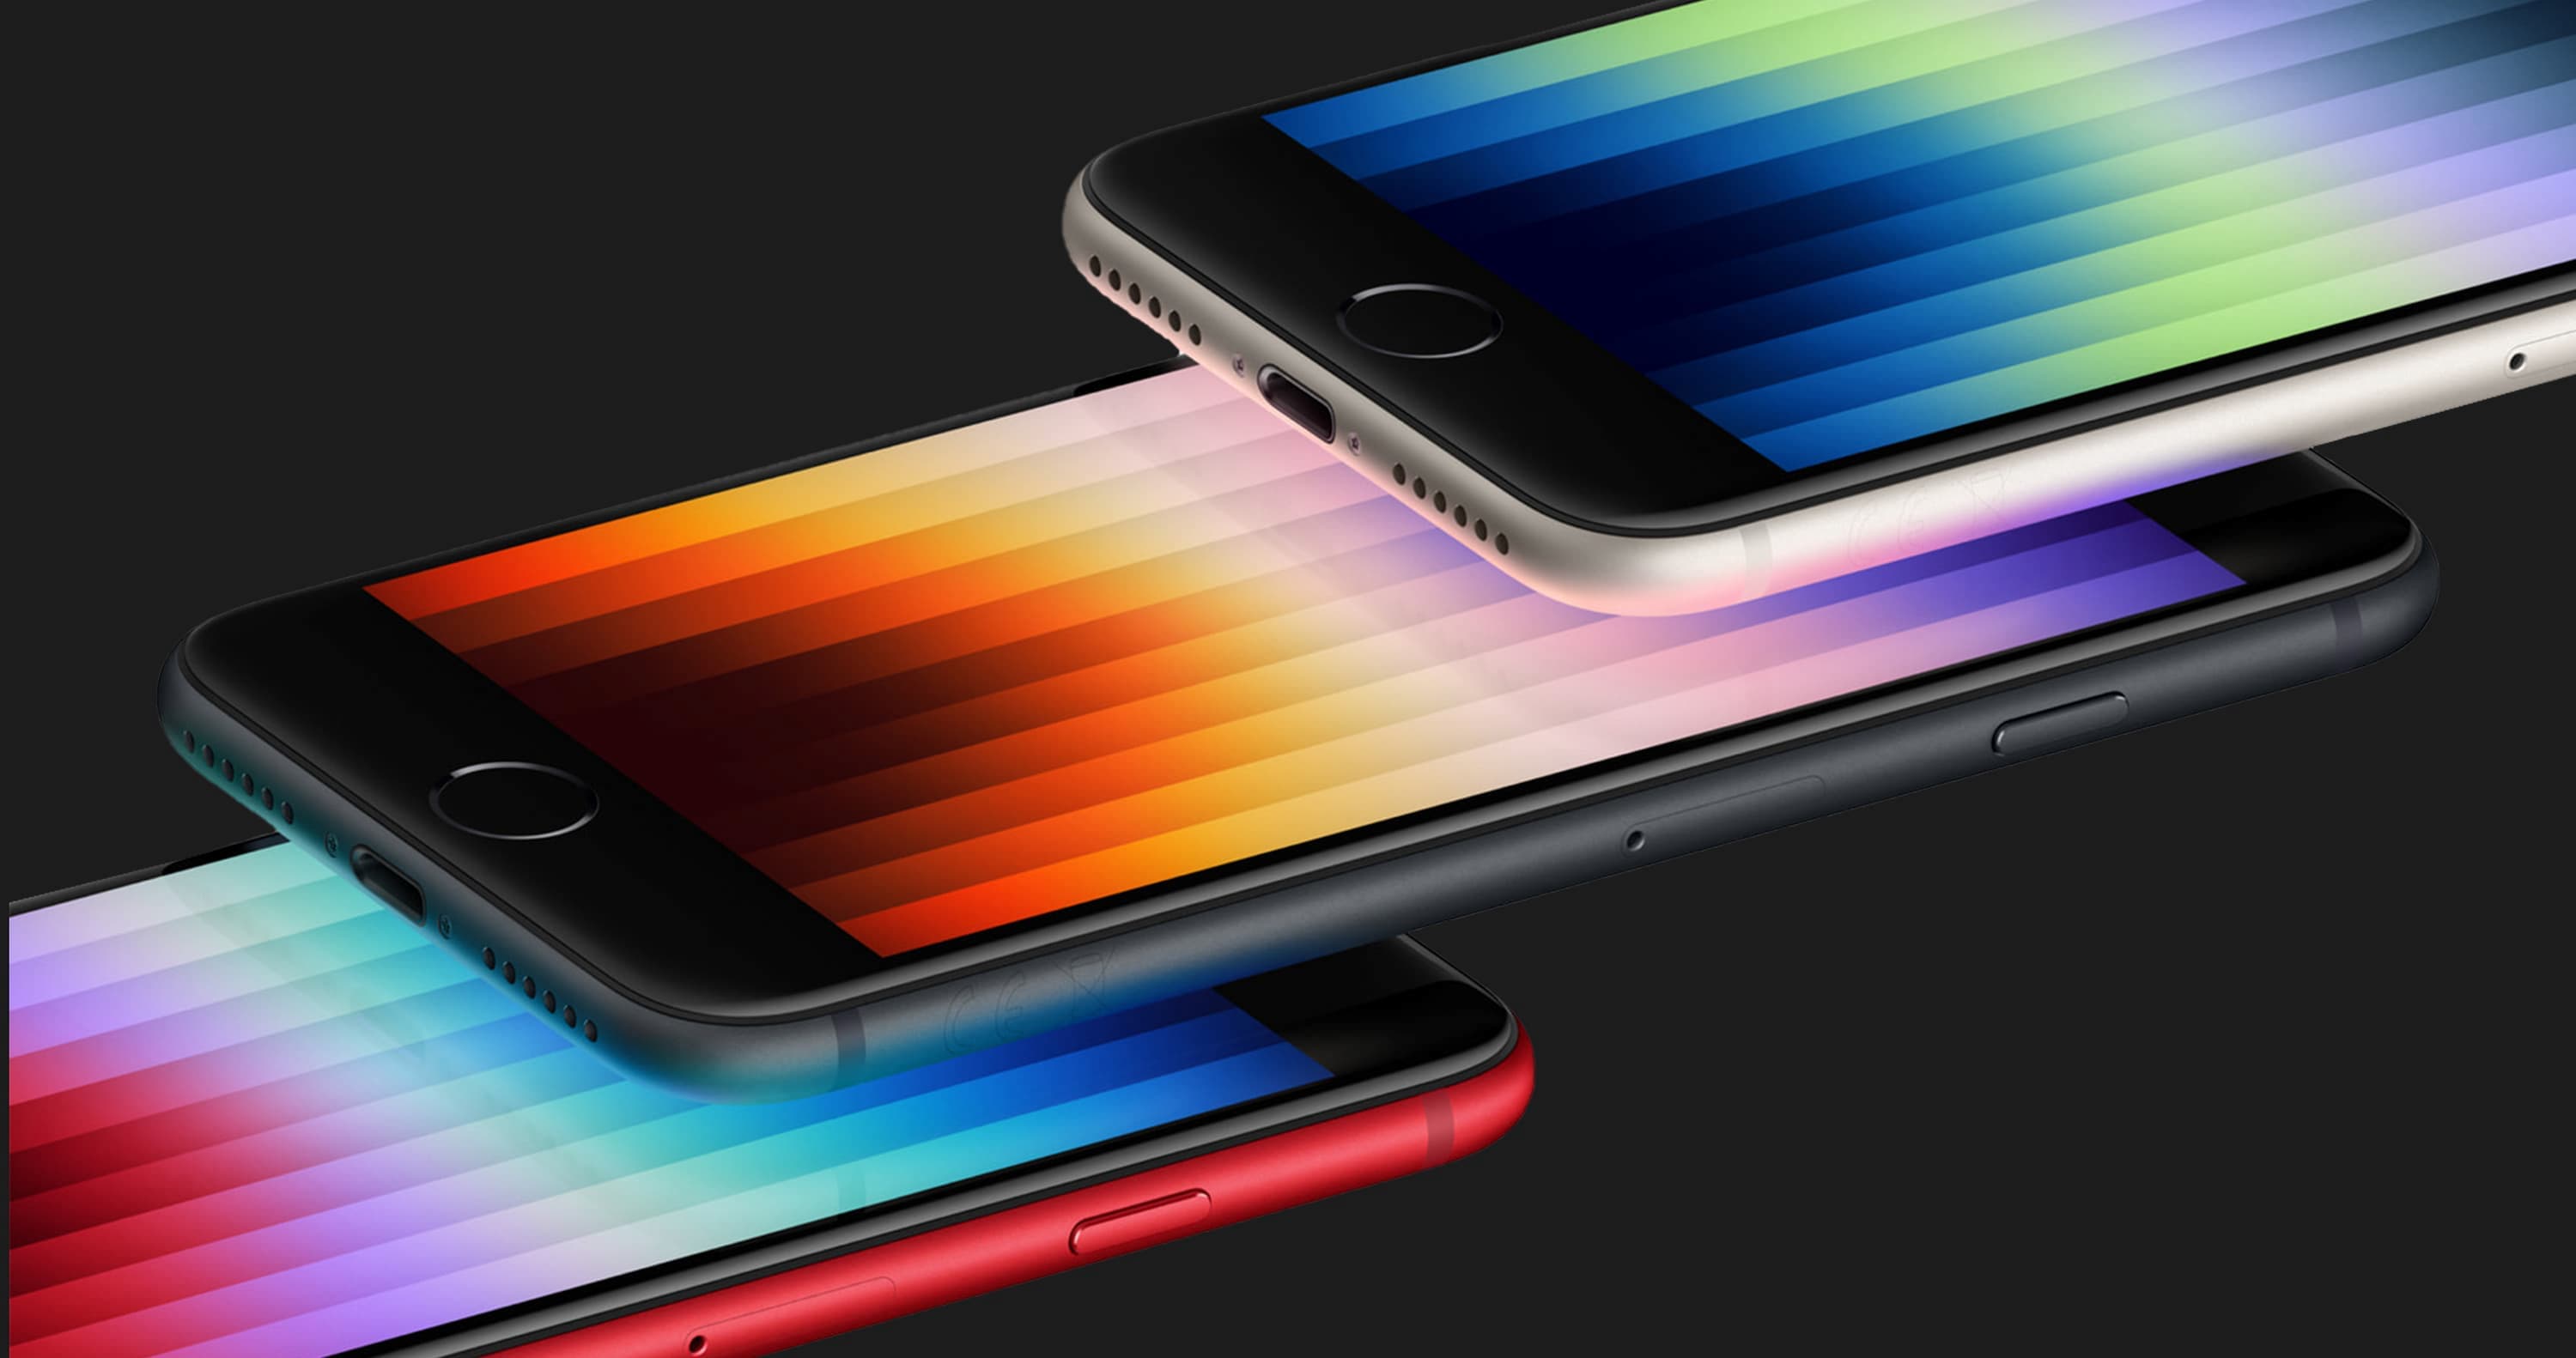 Nowy iPhone SE zostanie wydany w 2025 roku i będzie miał ekran OLED, podobnie jak iPhone 13 i iPhone 14